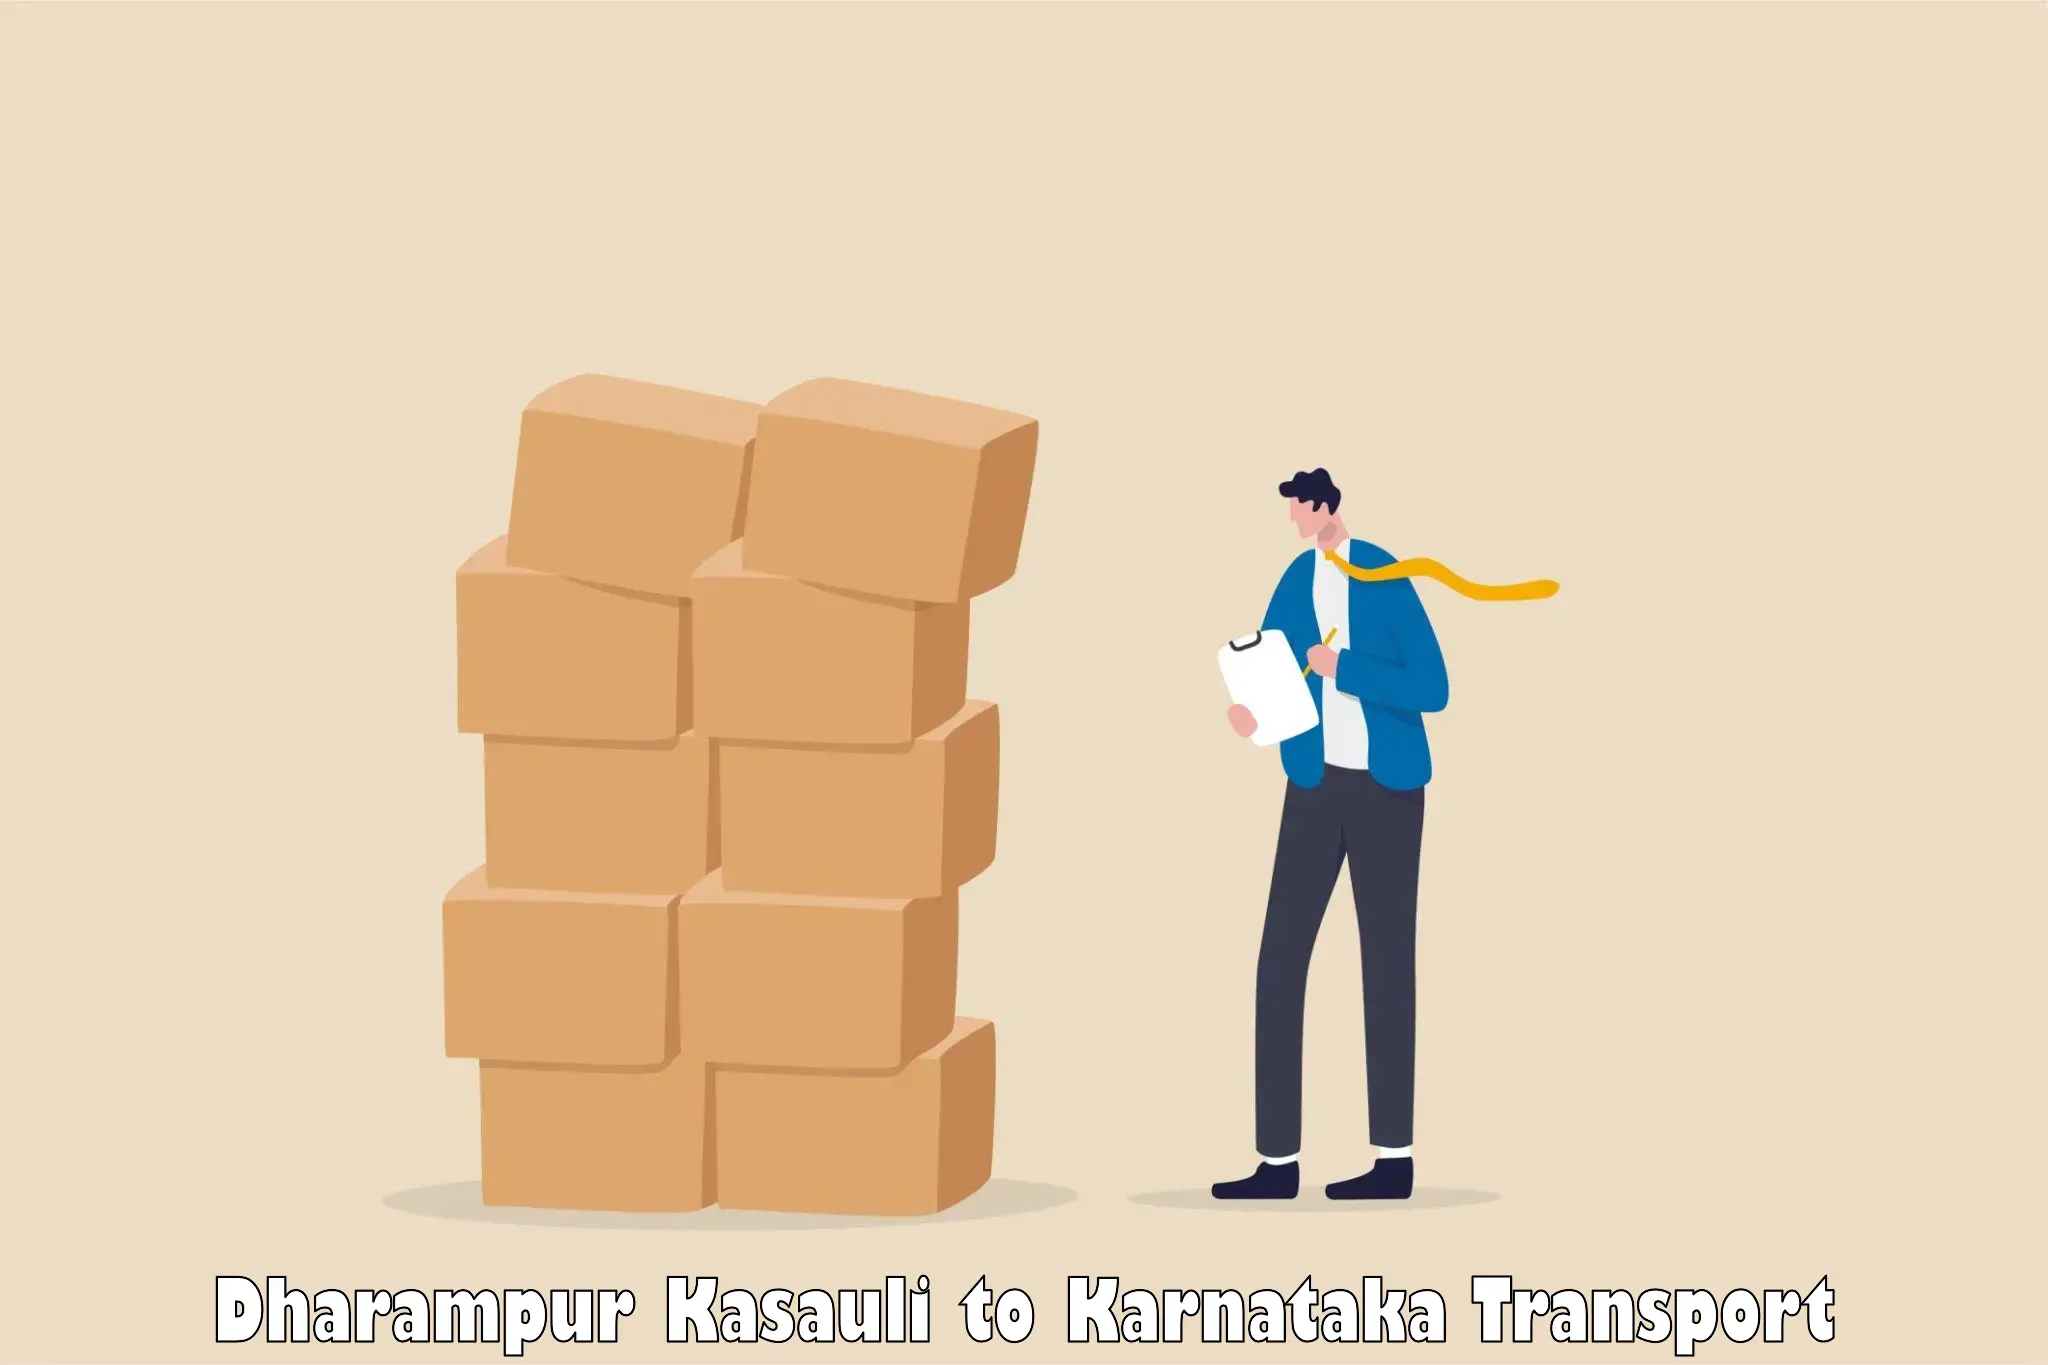 Pick up transport service Dharampur Kasauli to Hangal